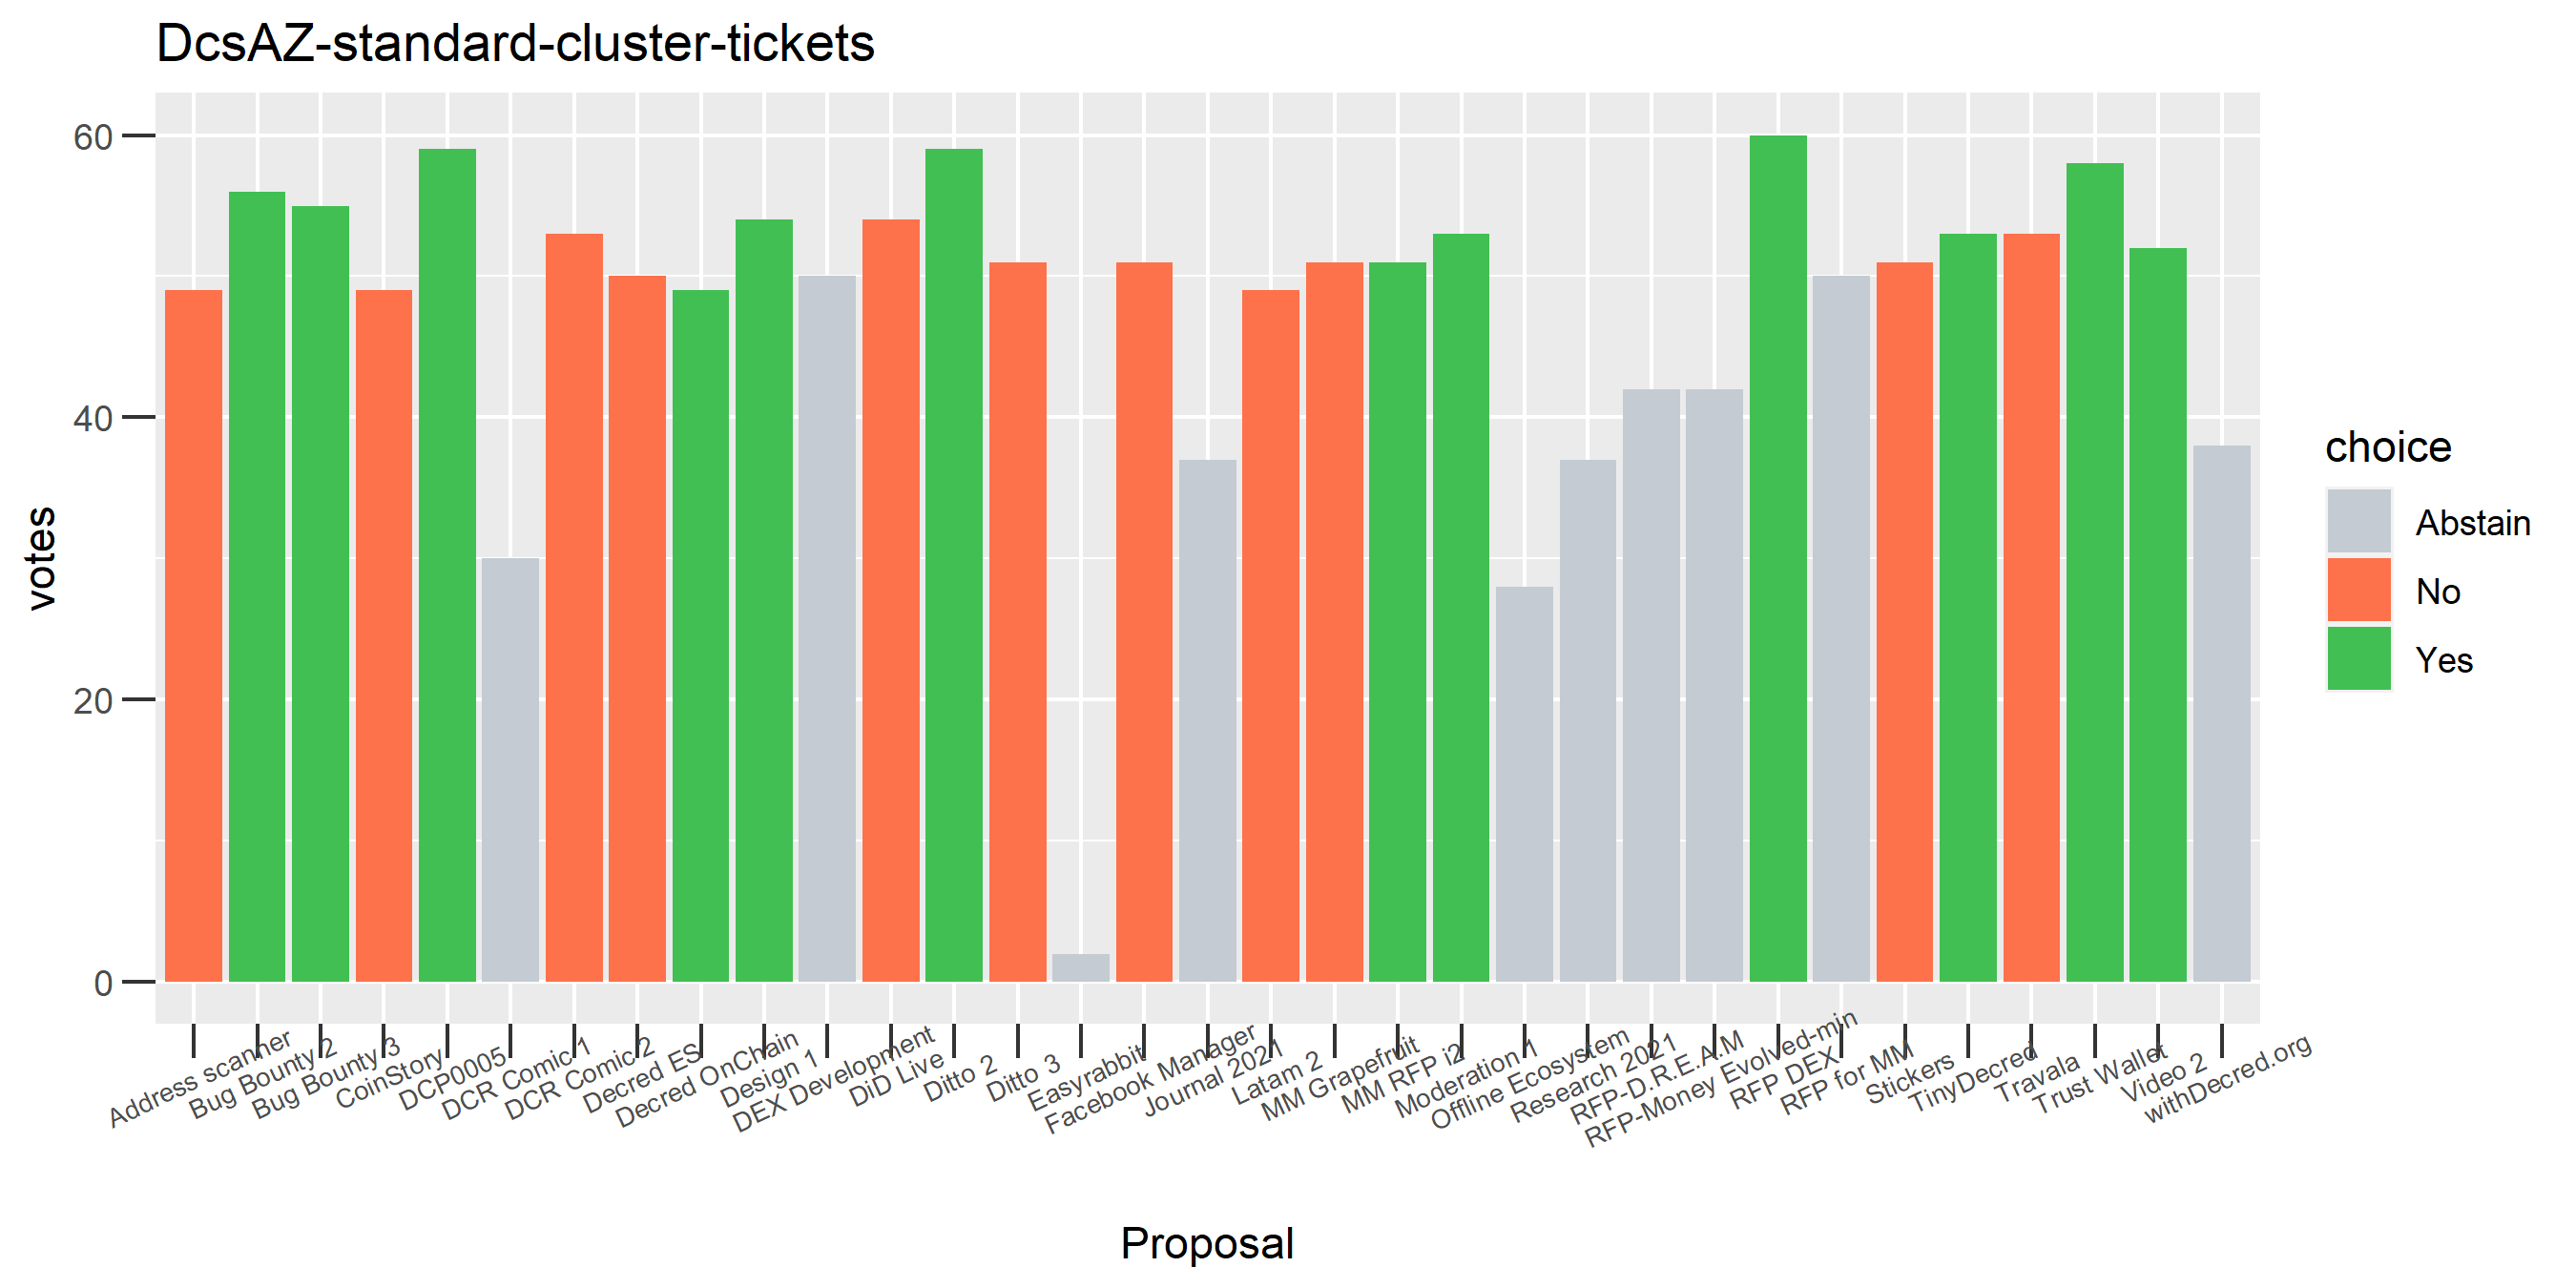 DcsAZ-standard-cluster-tickets